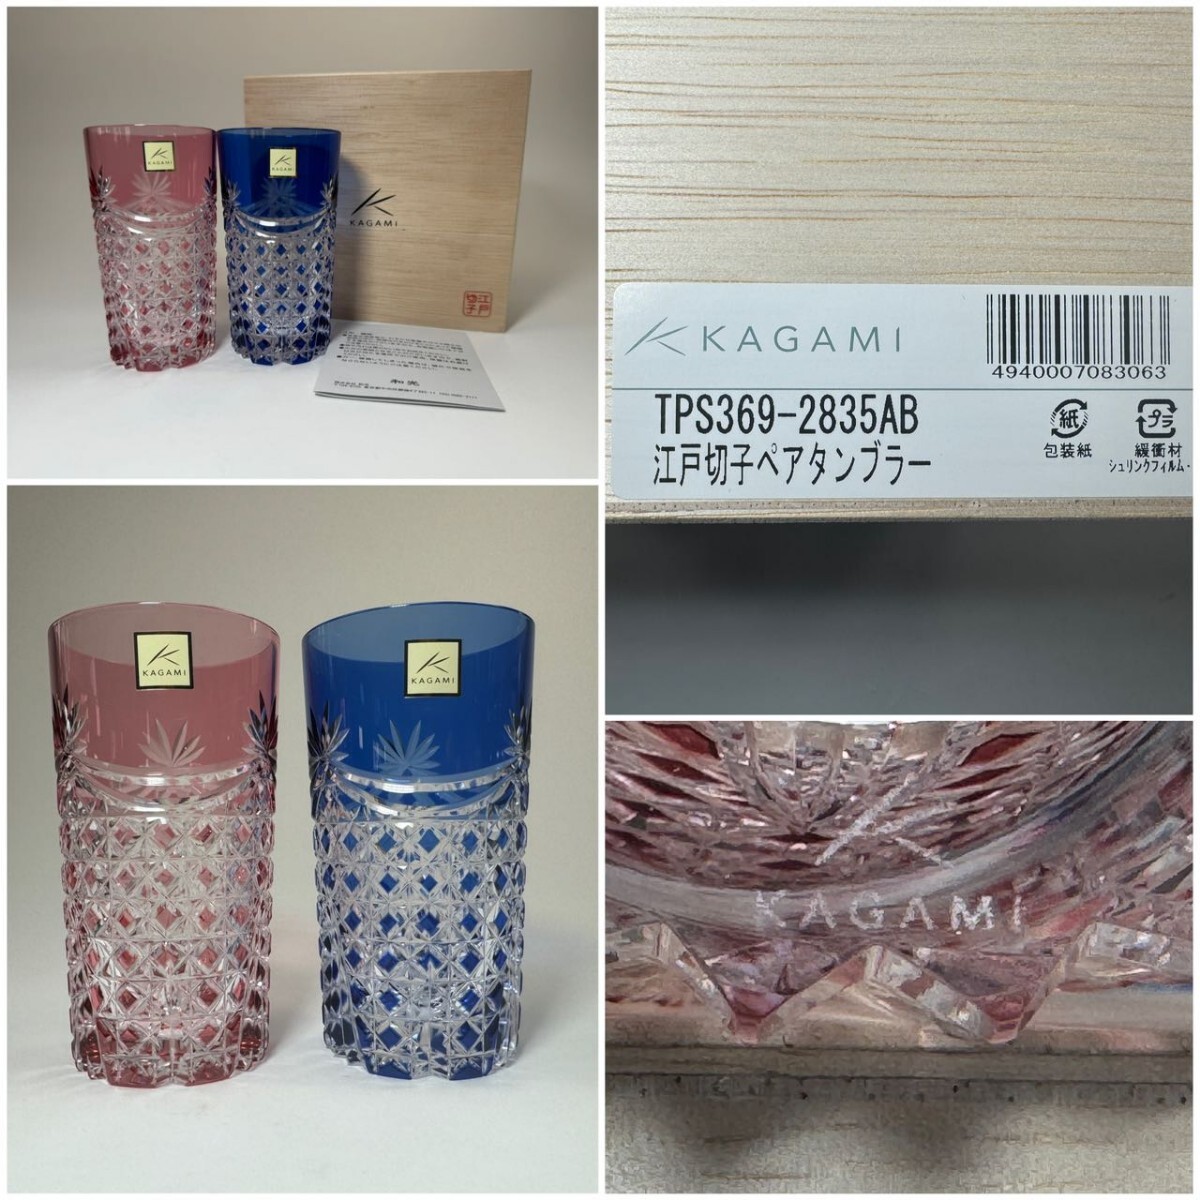 AS699 カガミクリスタル Kagami 江戸切子ペアタンブラー 色被せ 切子グラス2客セット 共箱の画像1